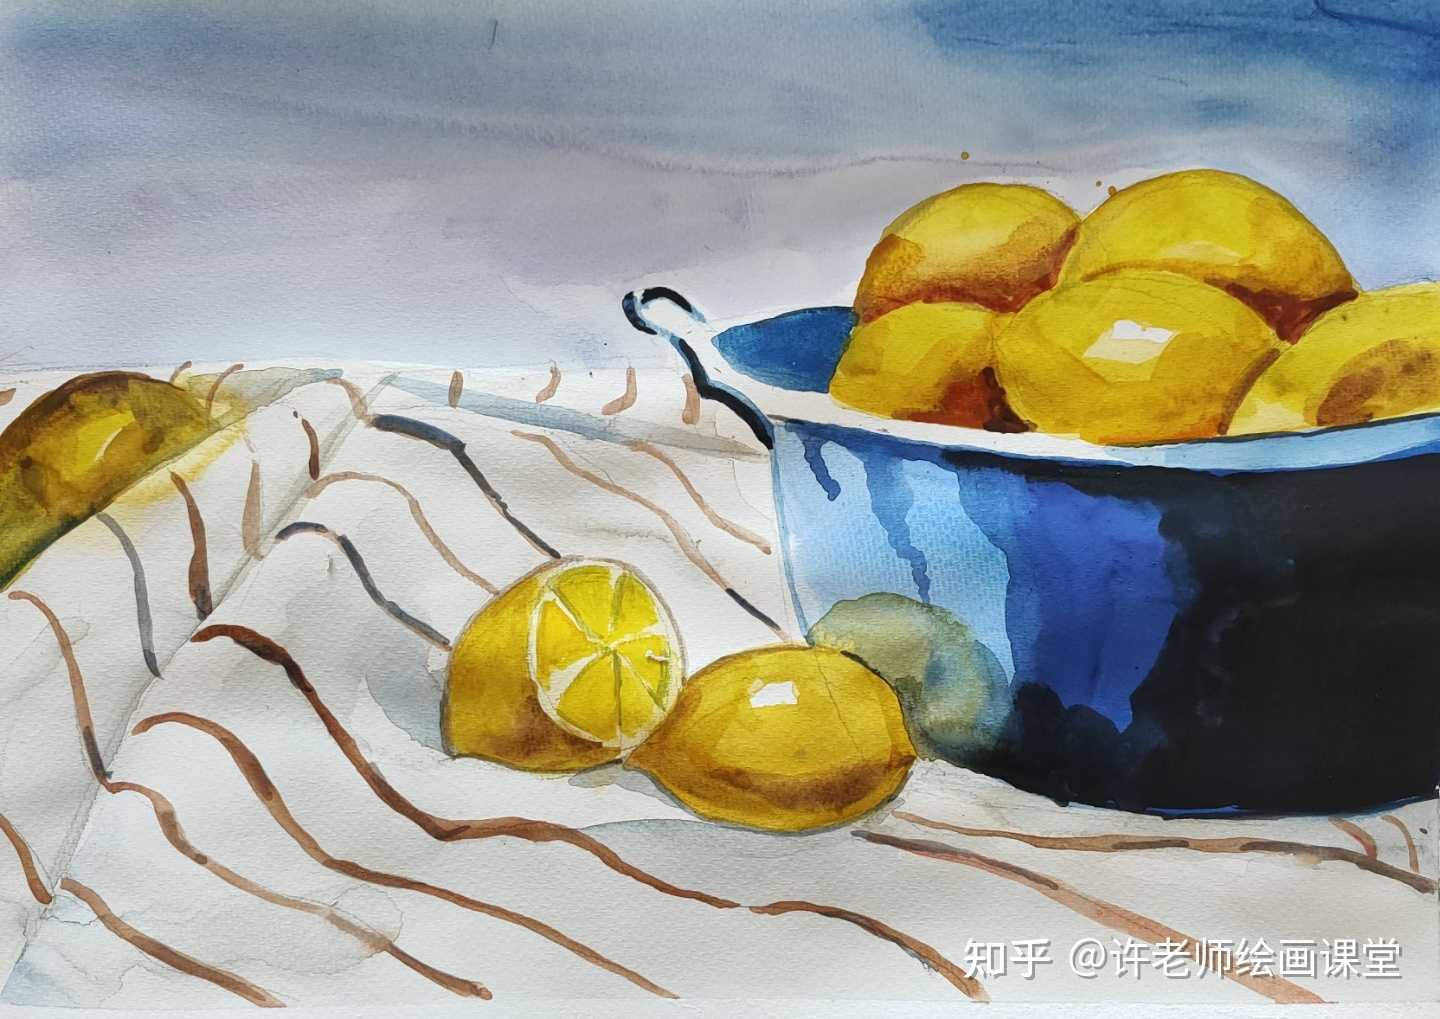 许老师绘画课堂 的想法 水彩画静物柠檬,按三步骤画完,柠檬的色